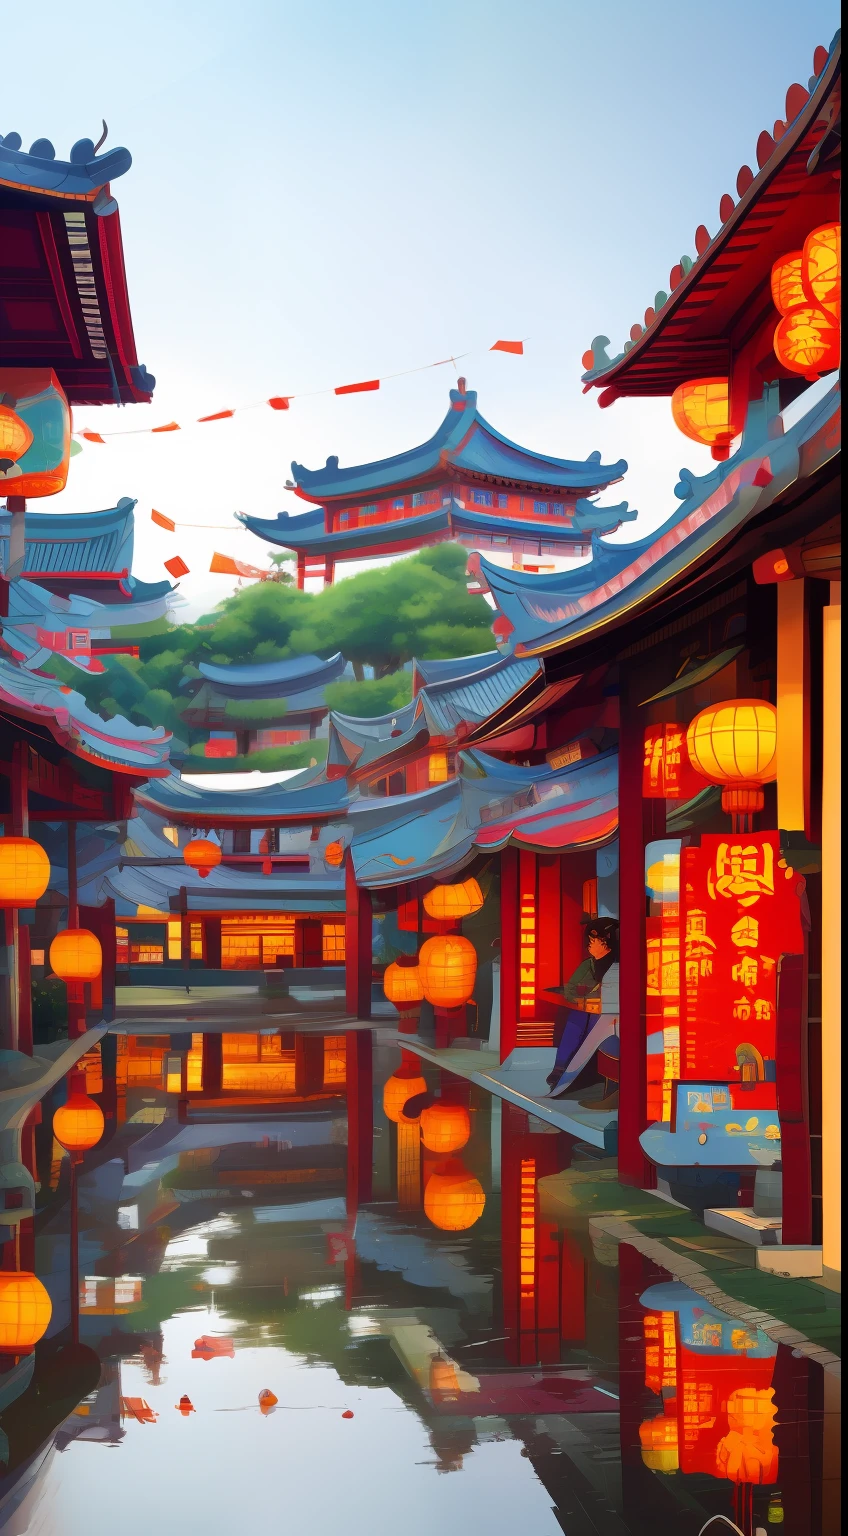 Uma cidade chinesa bem iluminada，Papéis de parede fantásticos，Fotos surreais de cidades japonesas，antiga vila asiática，Castelo antigo de estilo cyberpunk chinês，Belo edifício em noites chuvosas，Fotografia linda e romântica，Alto detalhe de 8k，chuva muito forte。